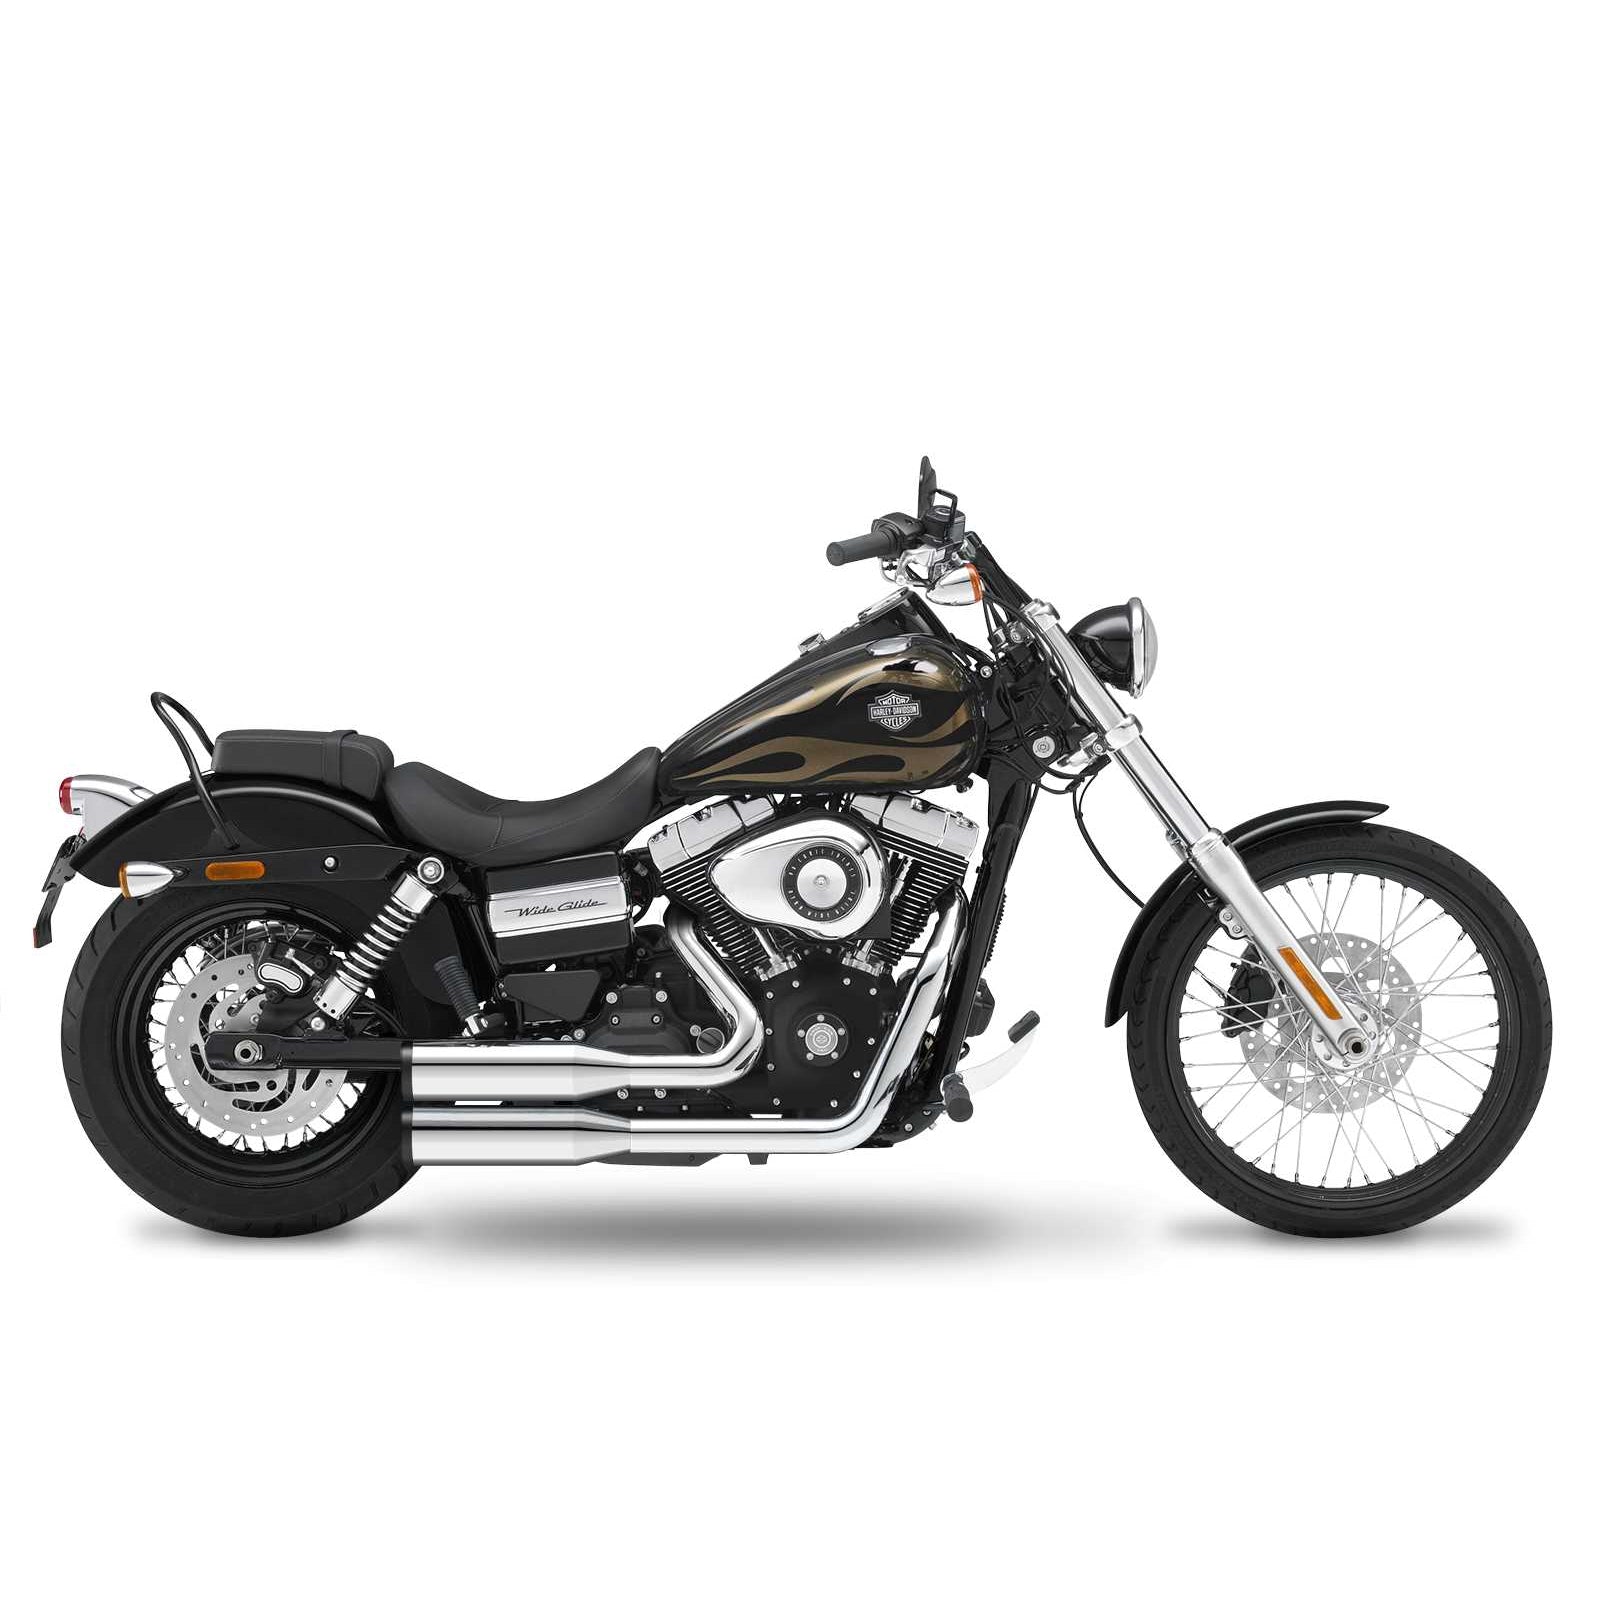 Кesstech 2017 Harley-Davidson Wide Glide Complete systems adjustable